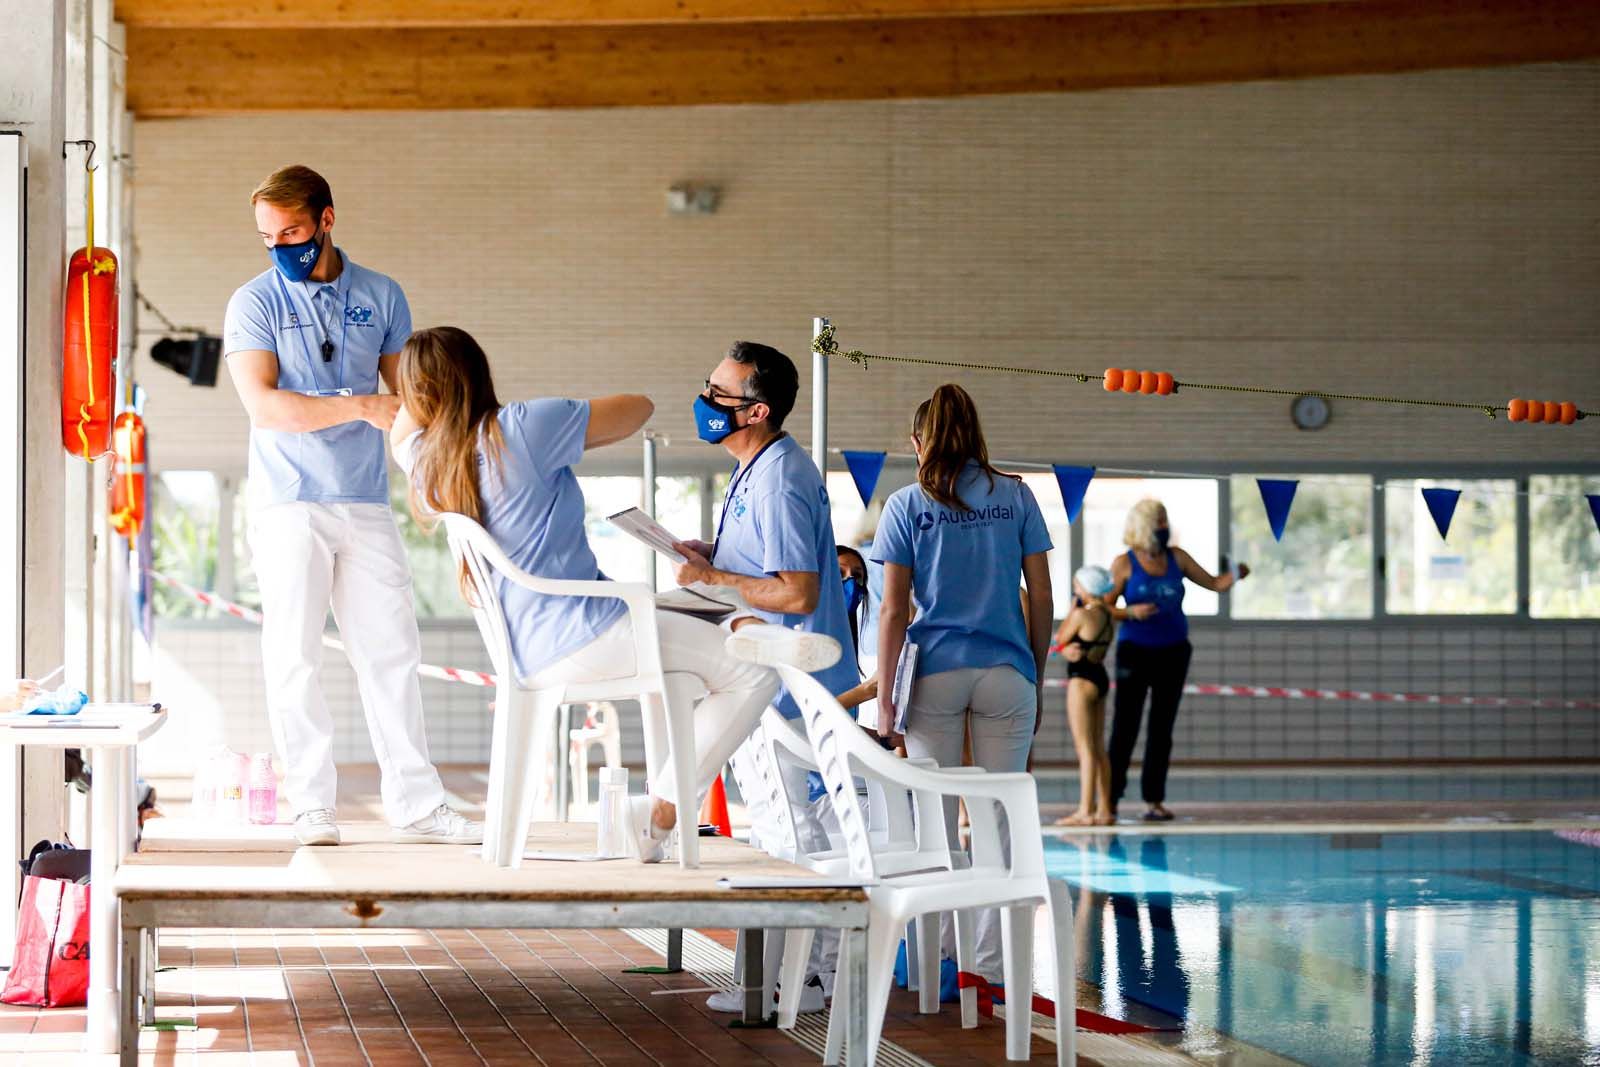 Las nadadoras ibicencas testean su nivel en la piscina de Can Coix, en Sant Antoni